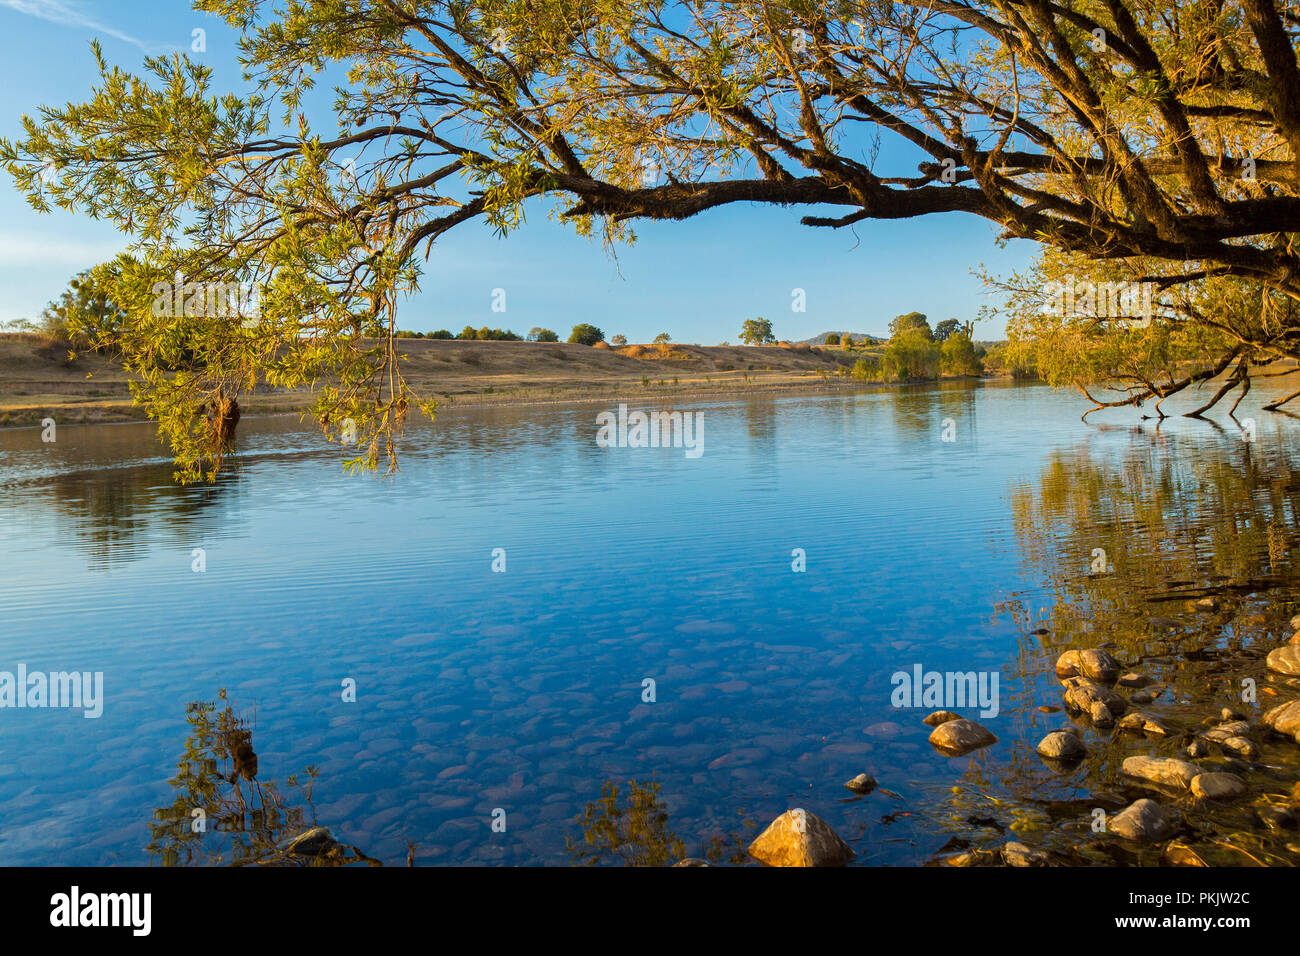 Ruhige blaue Wasser des Clarence River schneiden durch bewaldete Landschaft unter blauem Himmel im Norden von NSW Australien Stockfoto